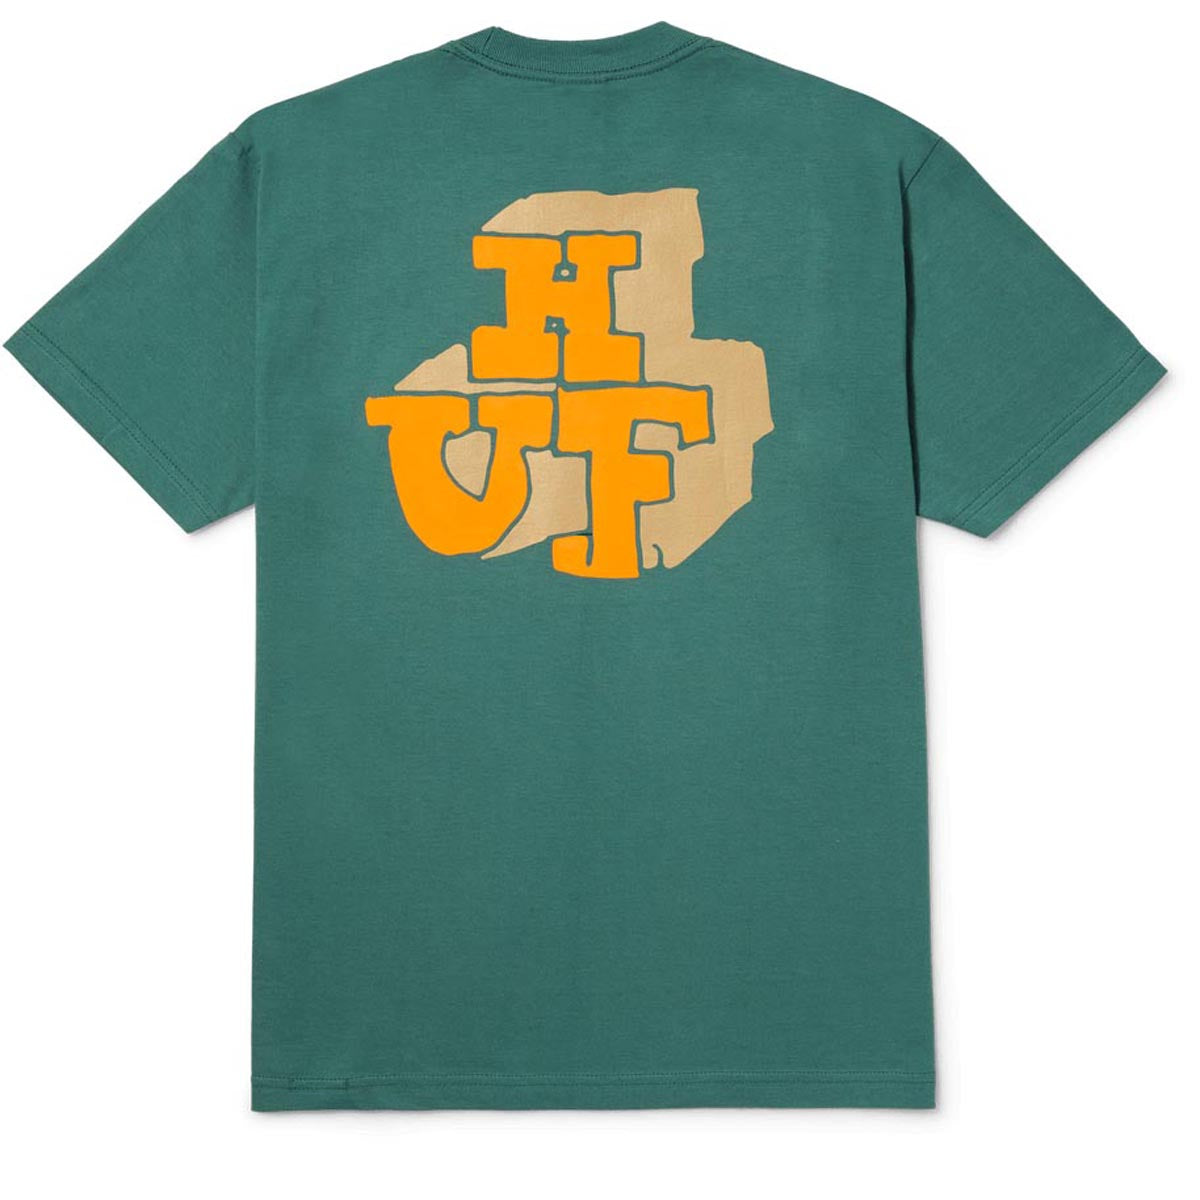 HUF Morex T-Shirt - Pine image 2